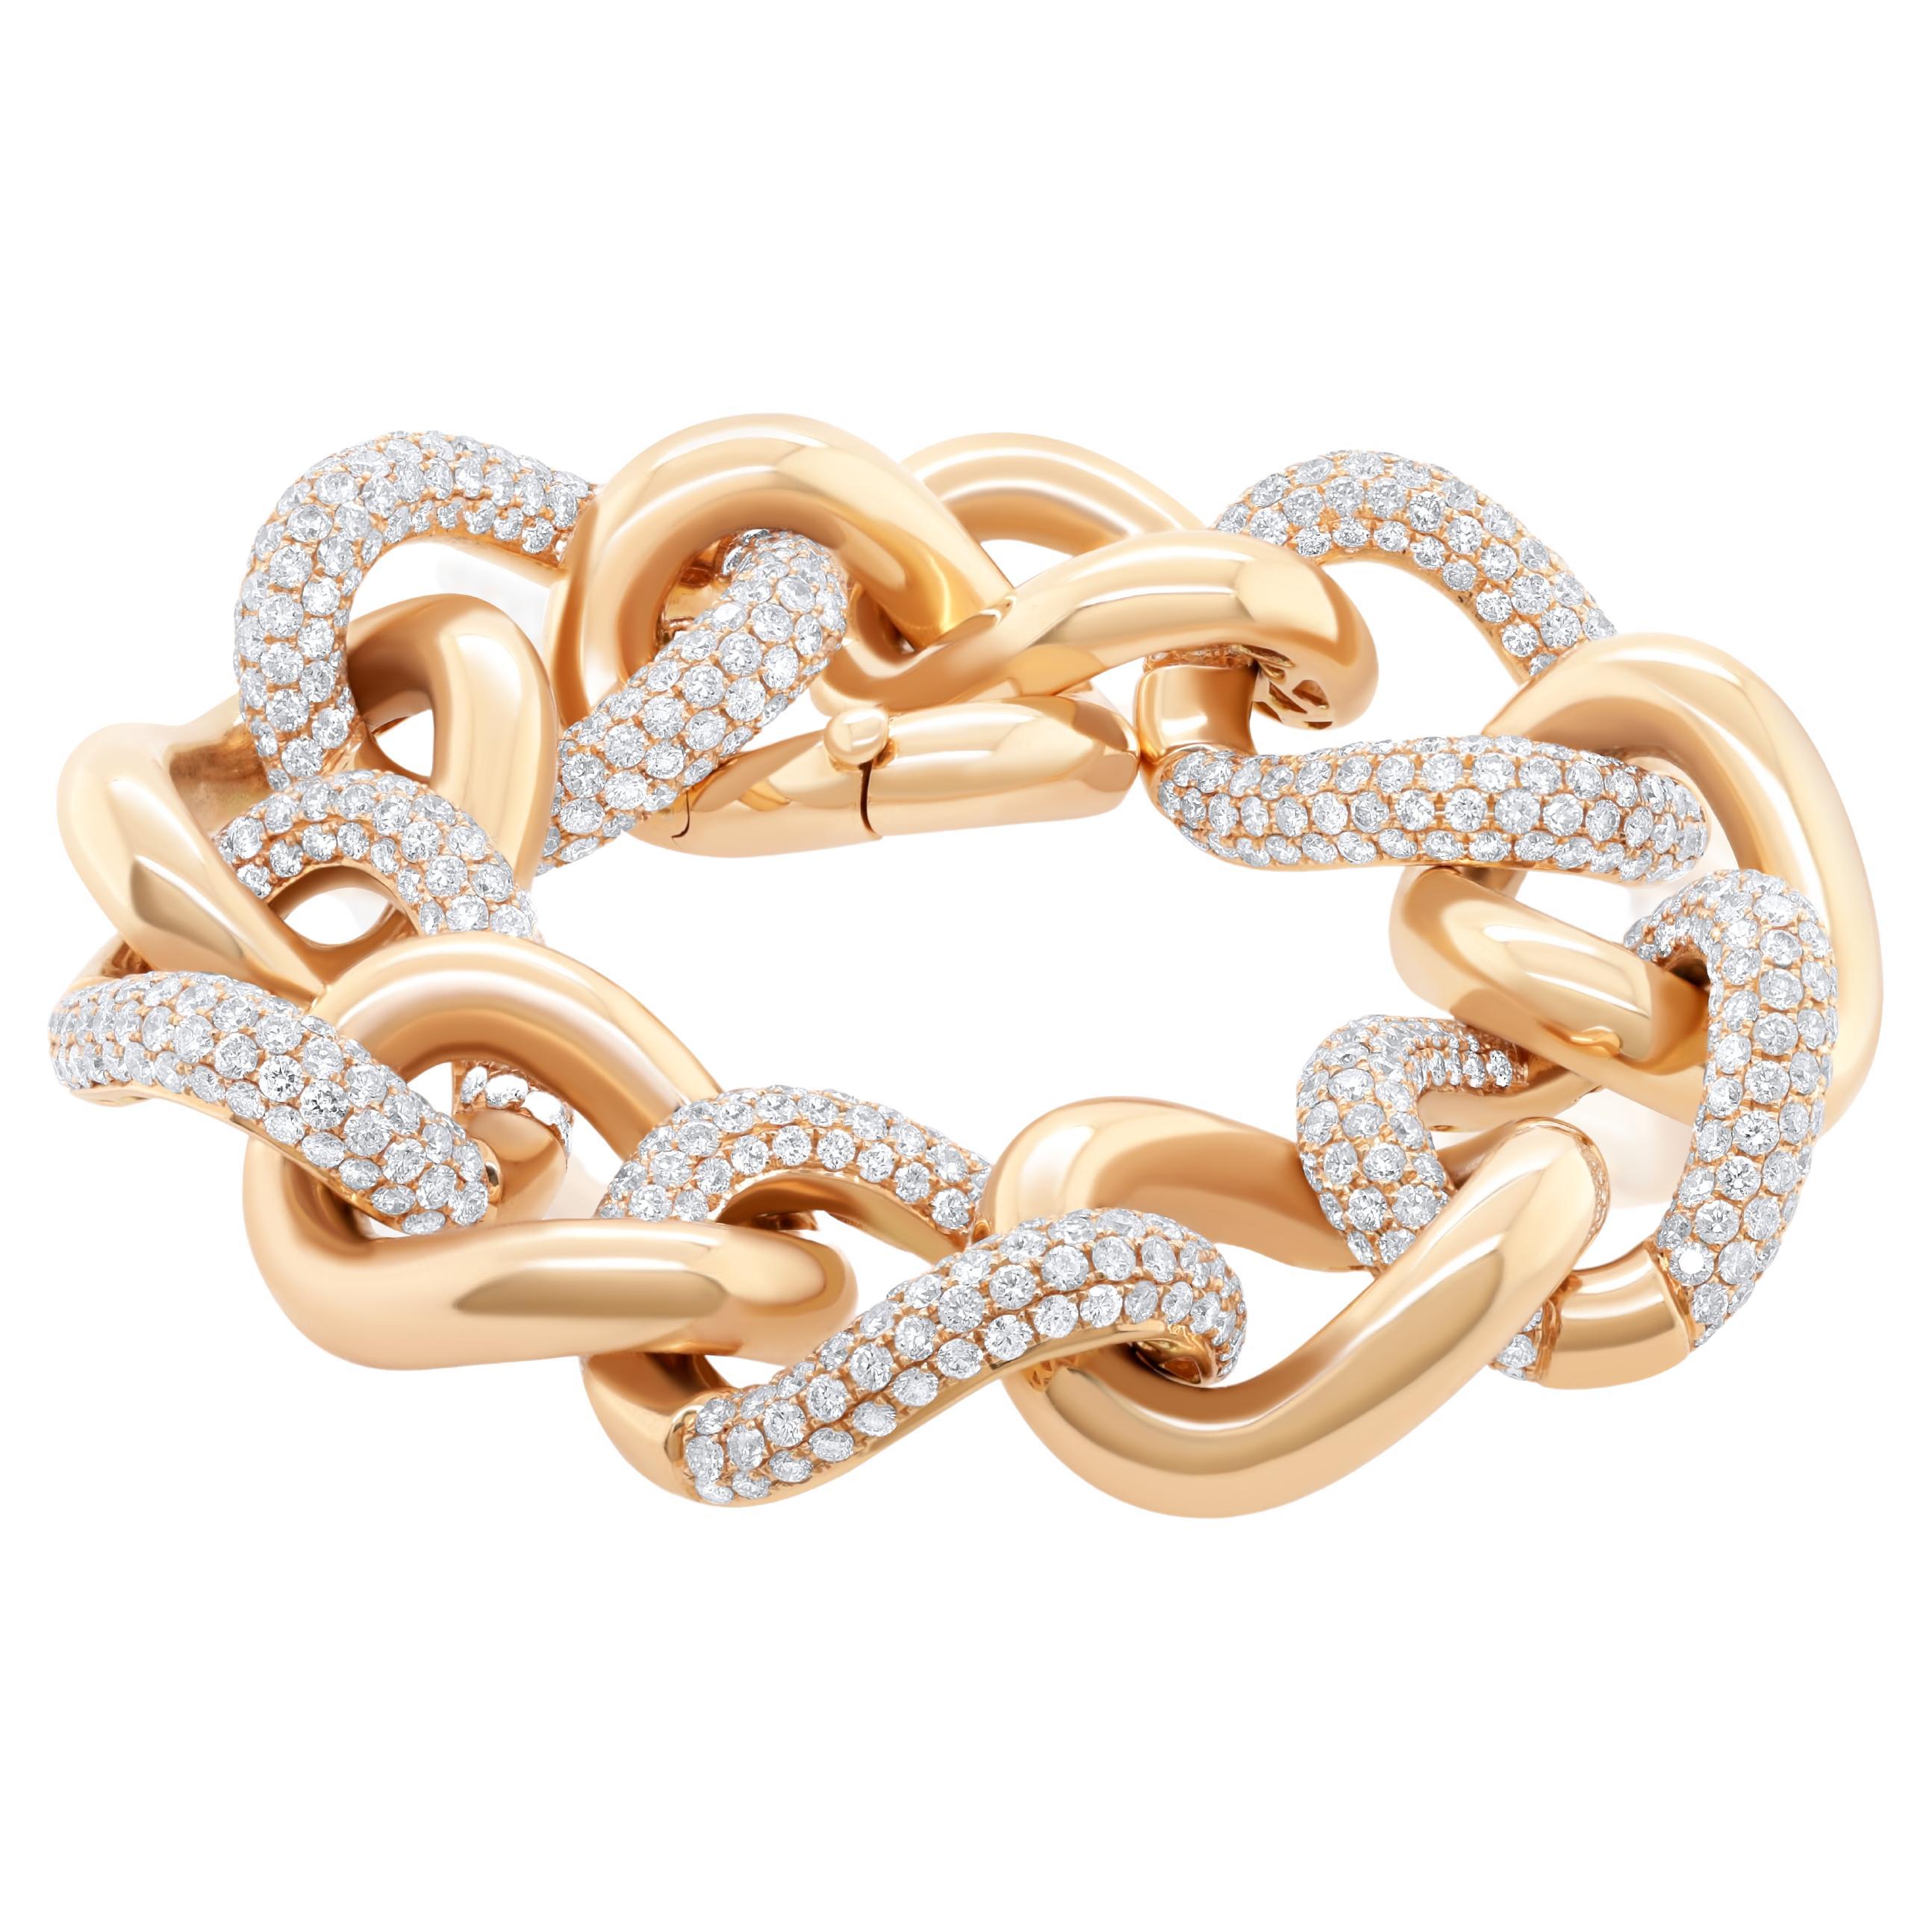 A&M. Bracelet en or rose 18kt contenant 22,00 cts de diamants.